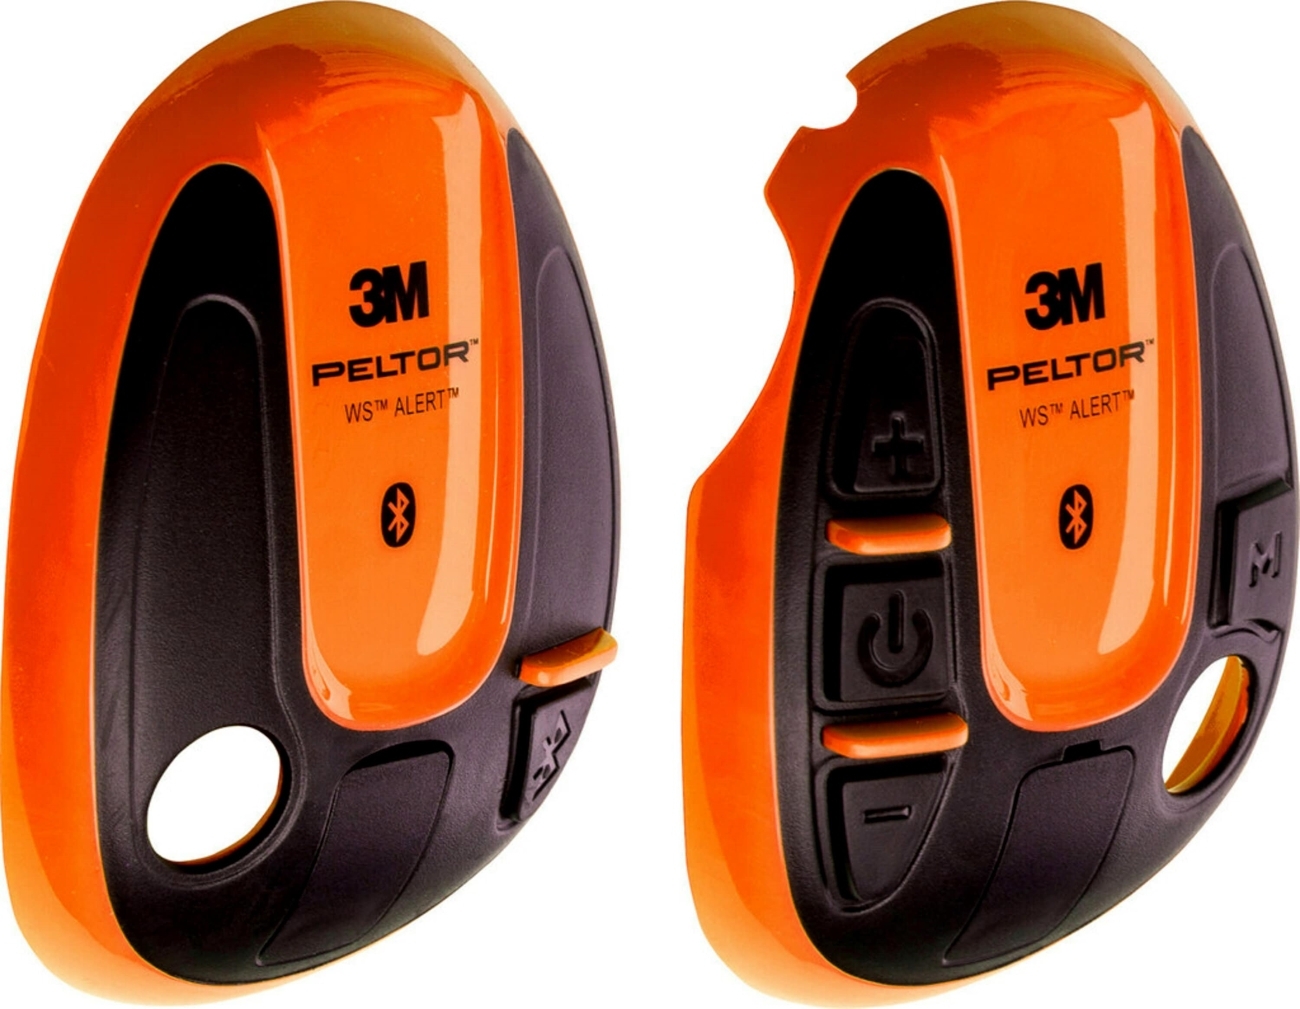 3M PELTOR-suojukset WS ALERT-kuulokkeisiin, oranssi, 1 pari (vasen oikea), 210300-664-OR/1